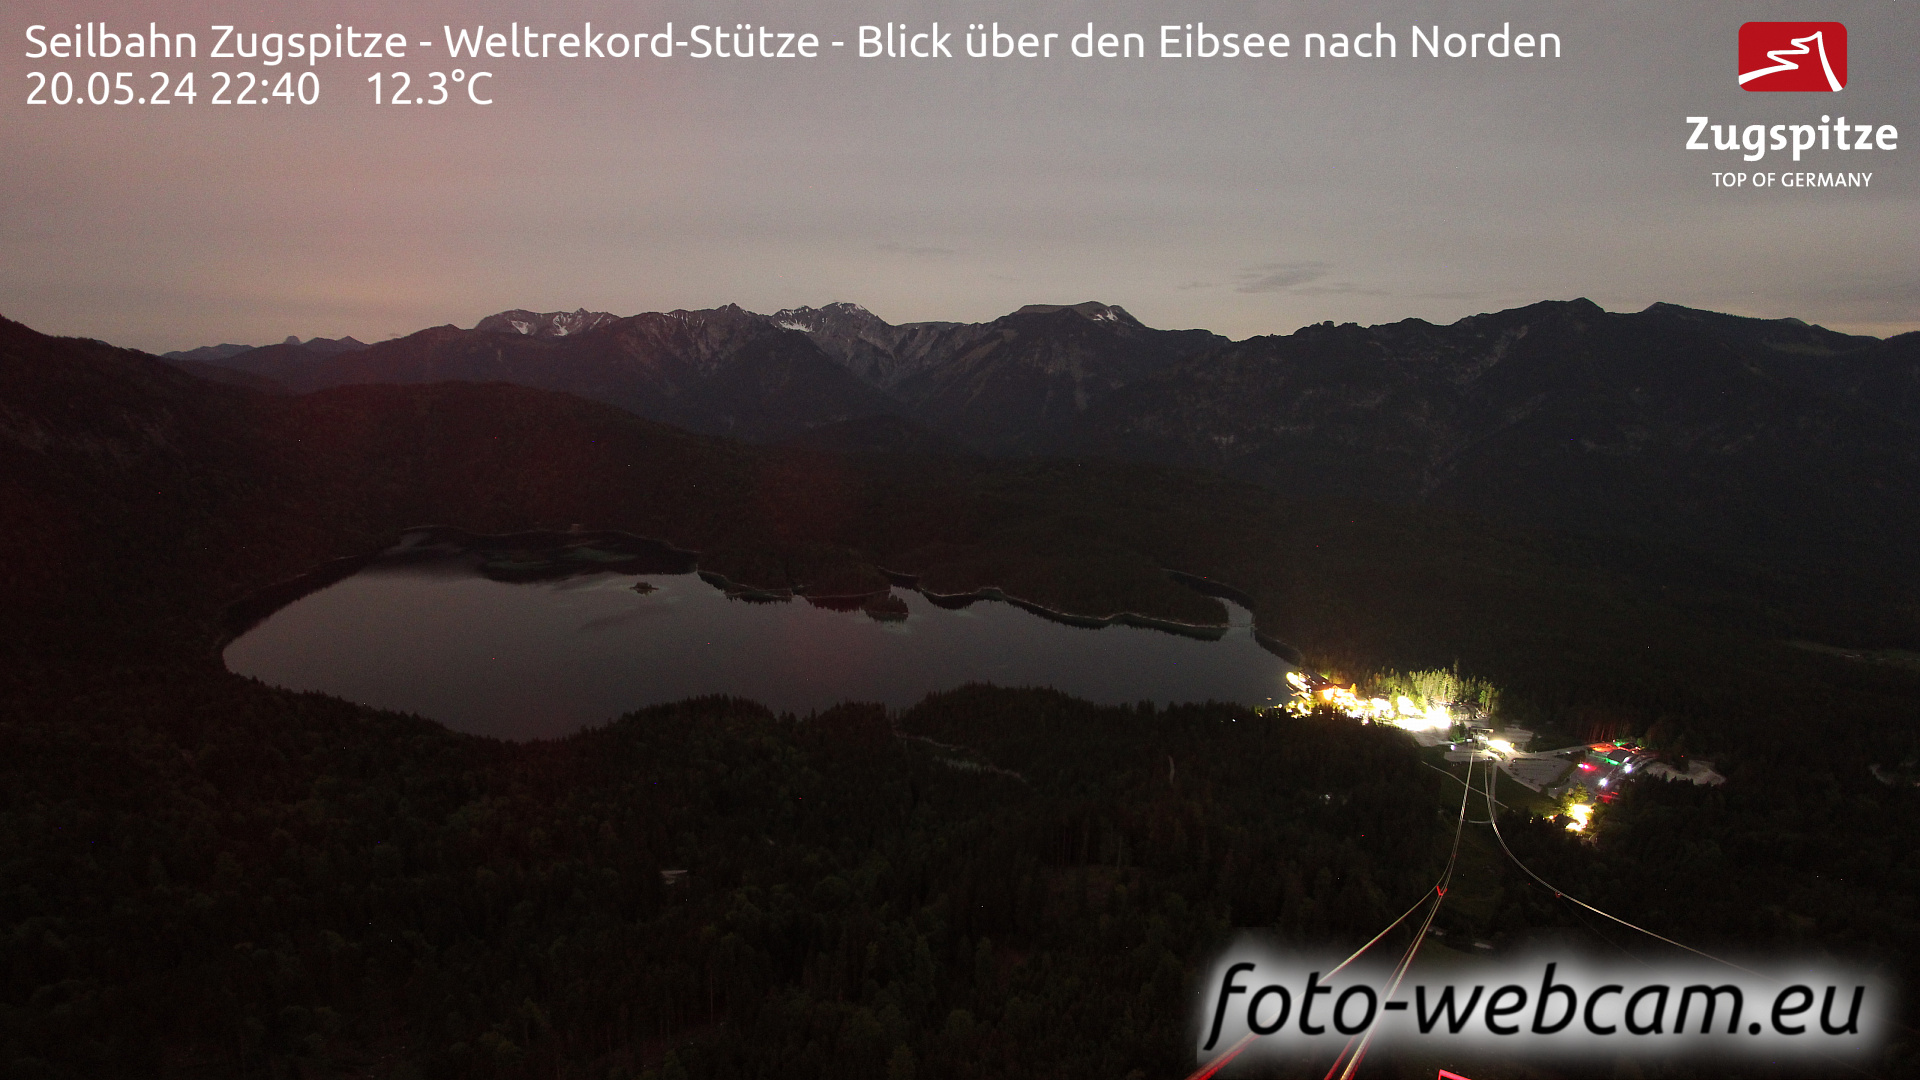 Zugspitze Wed. 22:49